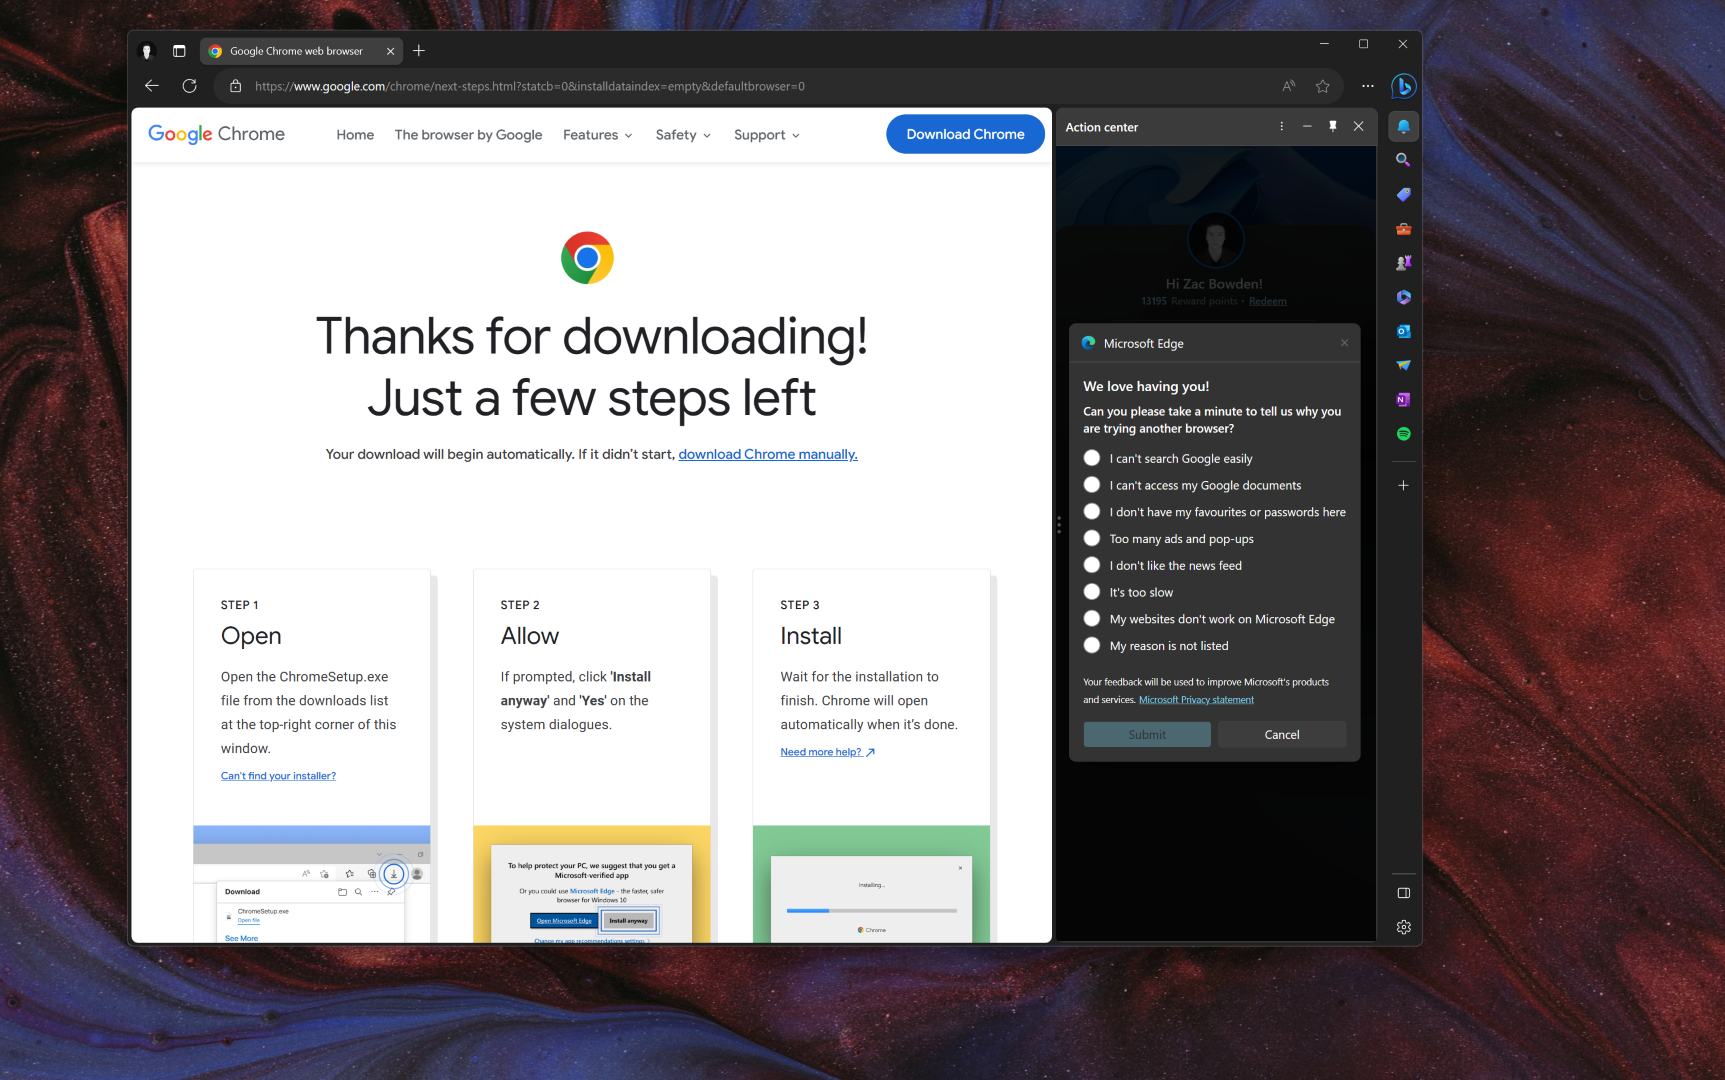 Microsoft Edge zeigt eine Umfrage an, wenn eine Person versucht, Google Chrome herunterzuladen.